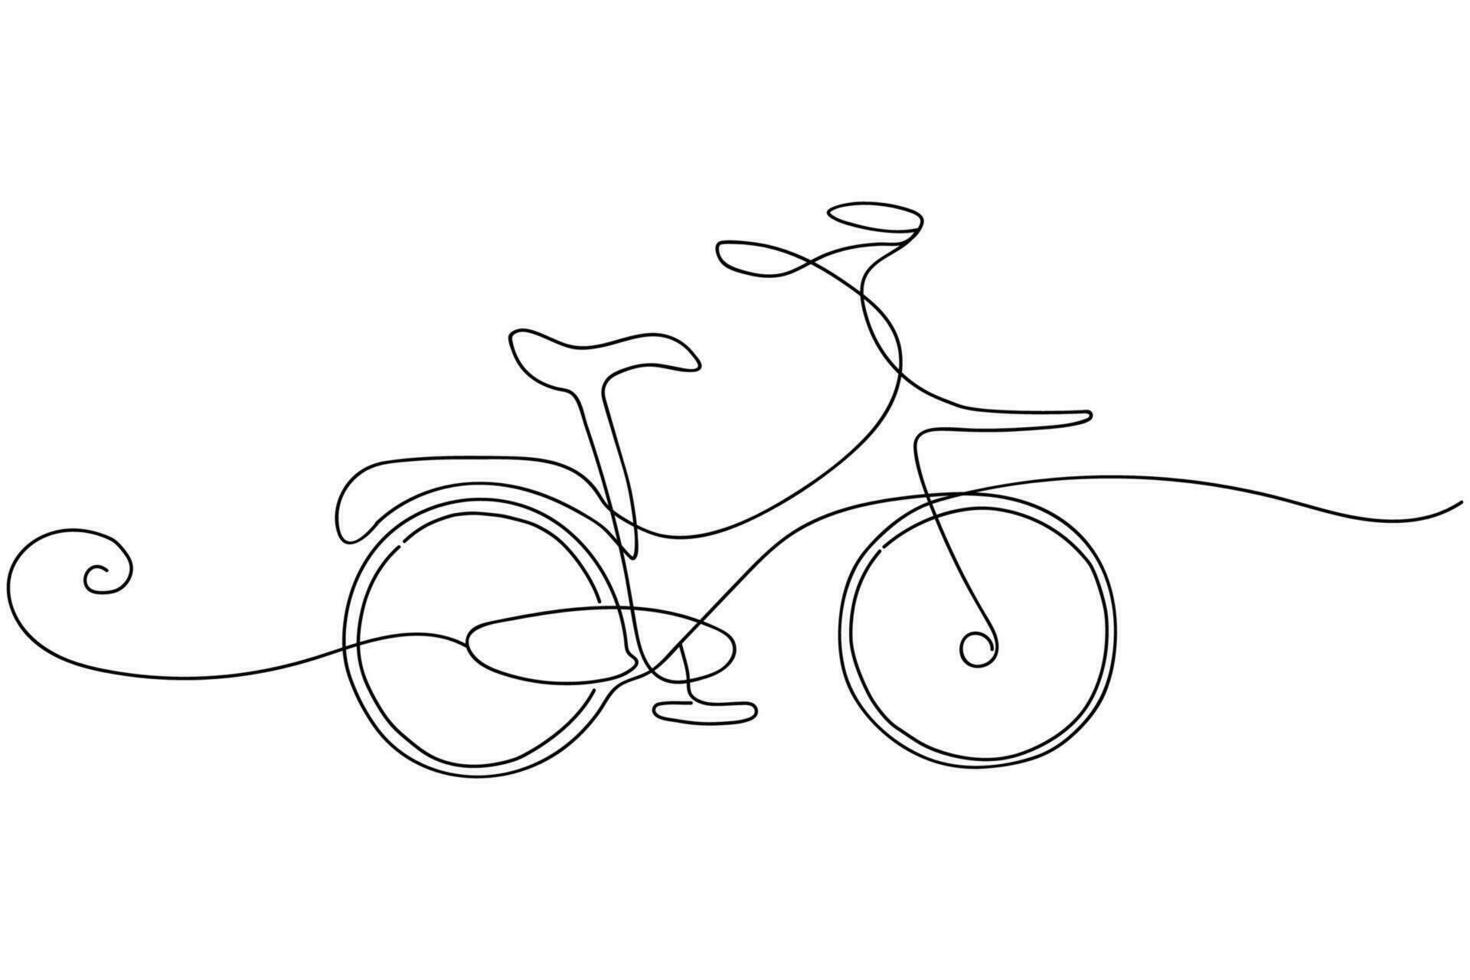 une ligne continue dessinant un vélo de ville urbain rétro vintage, transport sportif écologique. vélo relaxant pour la communauté. mode de vie sain en faisant du vélo. illustration graphique vectorielle de conception de dessin à une seule ligne vecteur